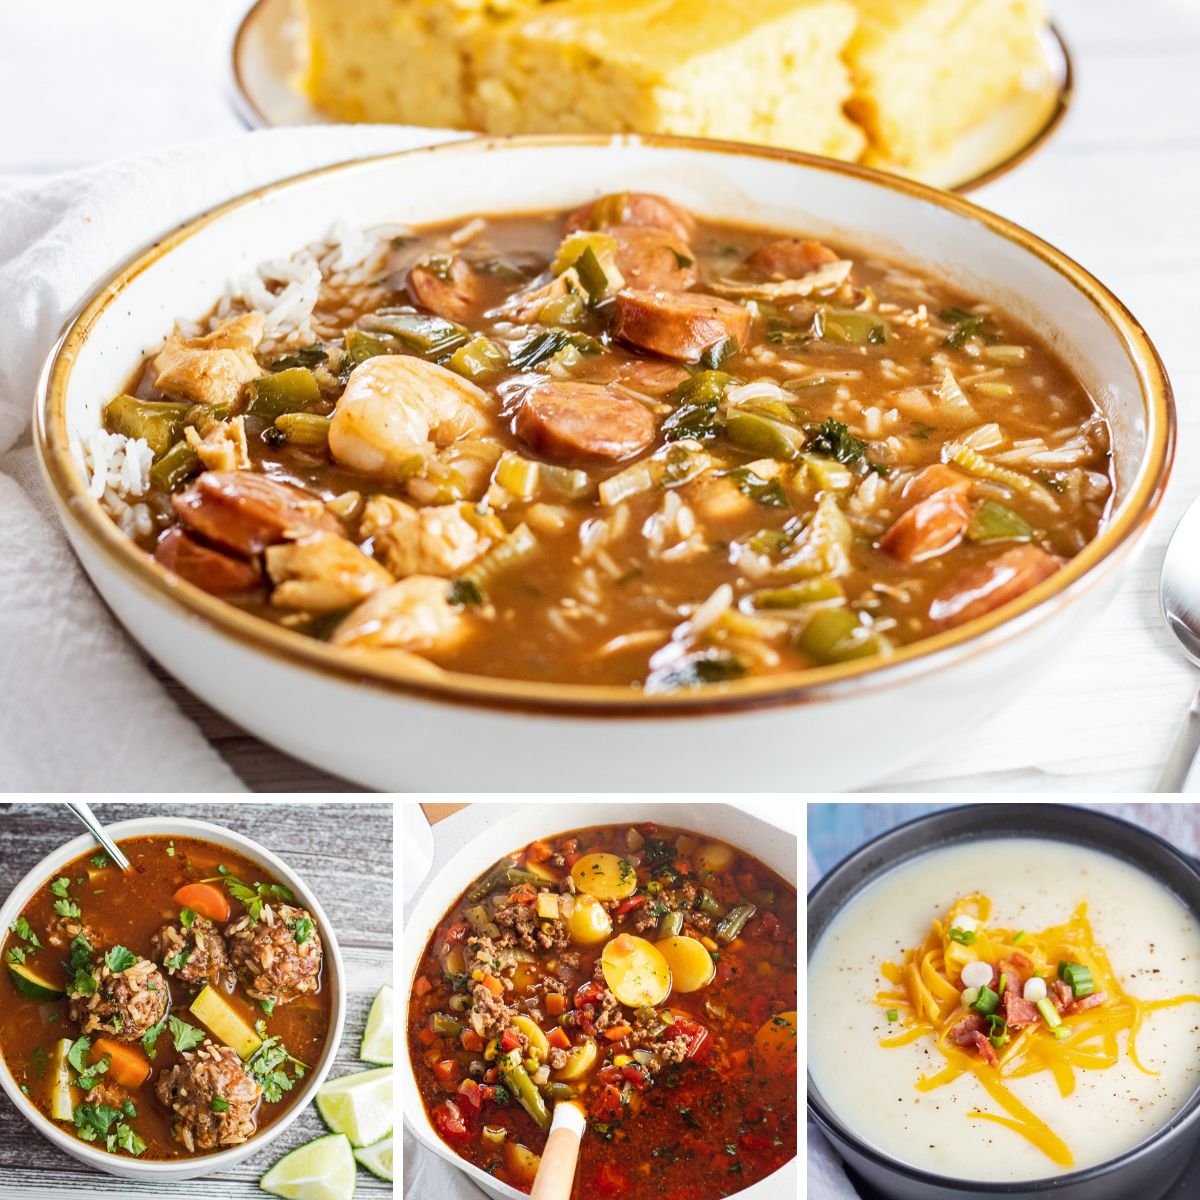 La mejor imagen de collage de recetas de sopa de otoño con 4 sopas de comida reconfortante y acogedora para calentar.